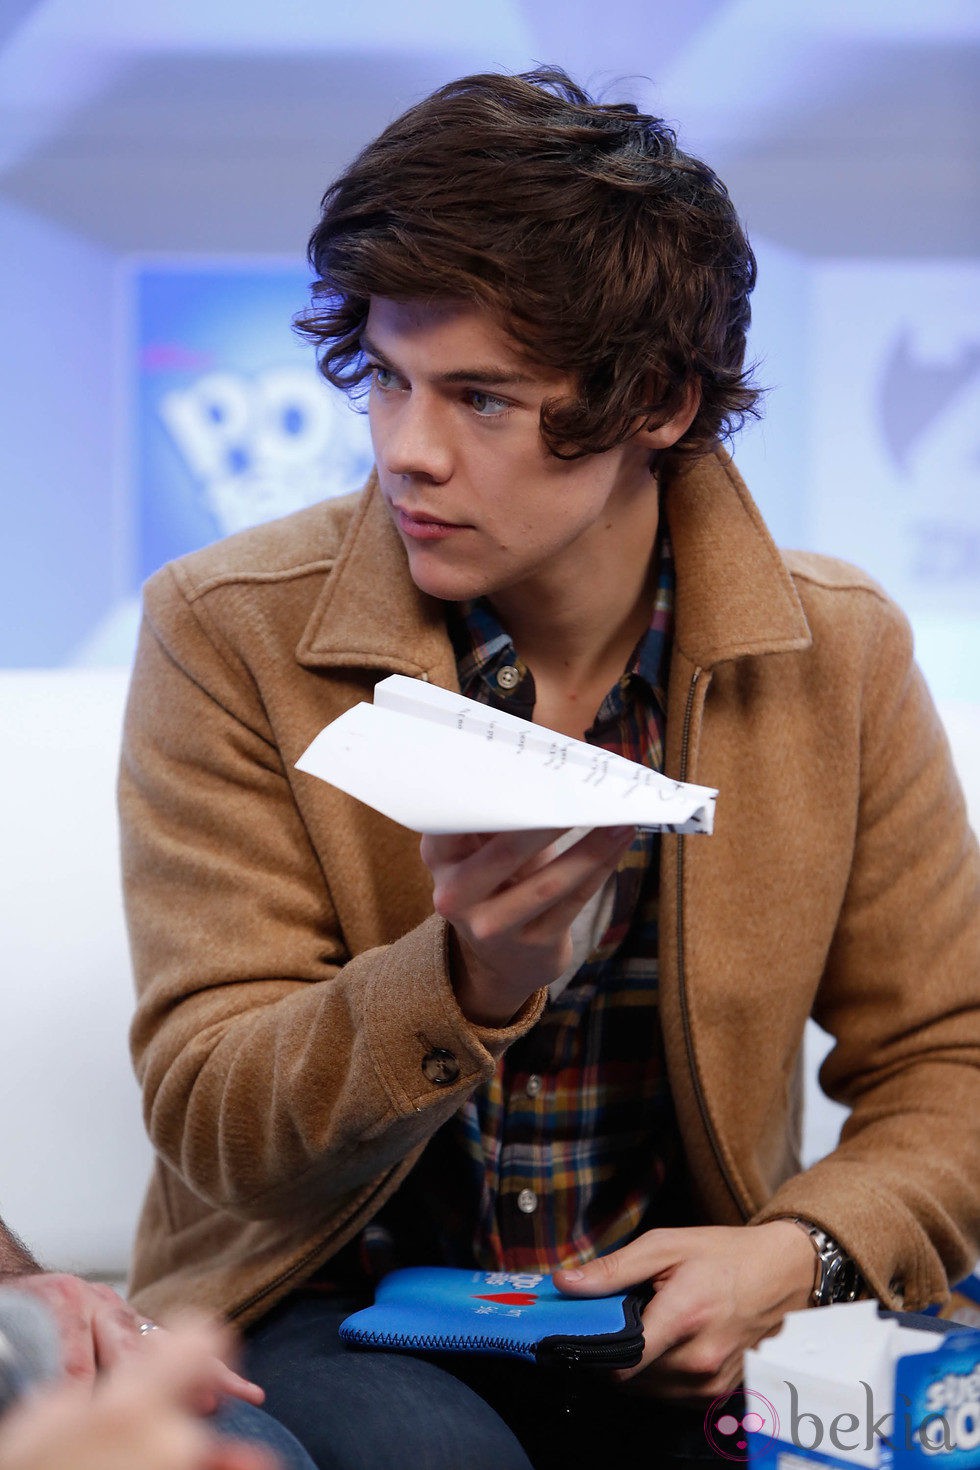 Harry Styles con un avión de papel